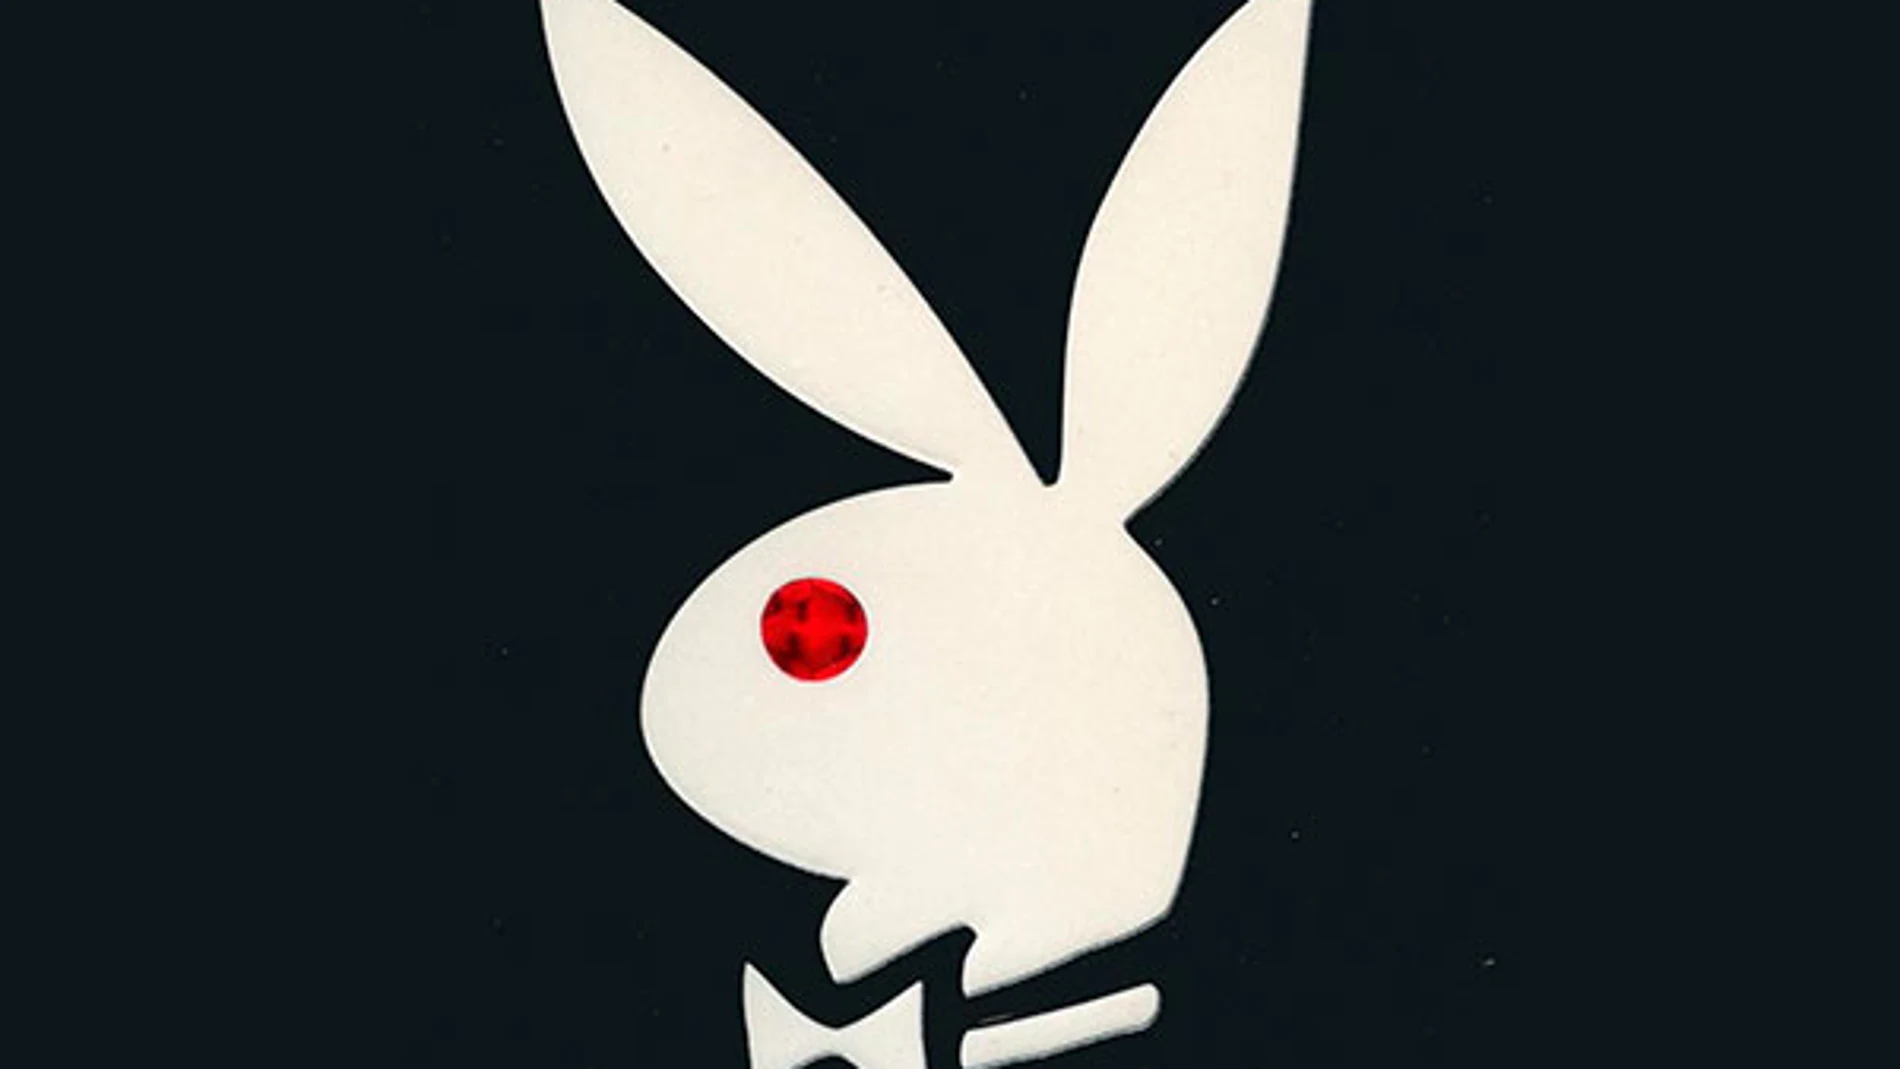 El famoso conejo de Playboy fue diseñado por Arv Miller y se convirtió en la imagen corporativa de la revista desde sus inicios.